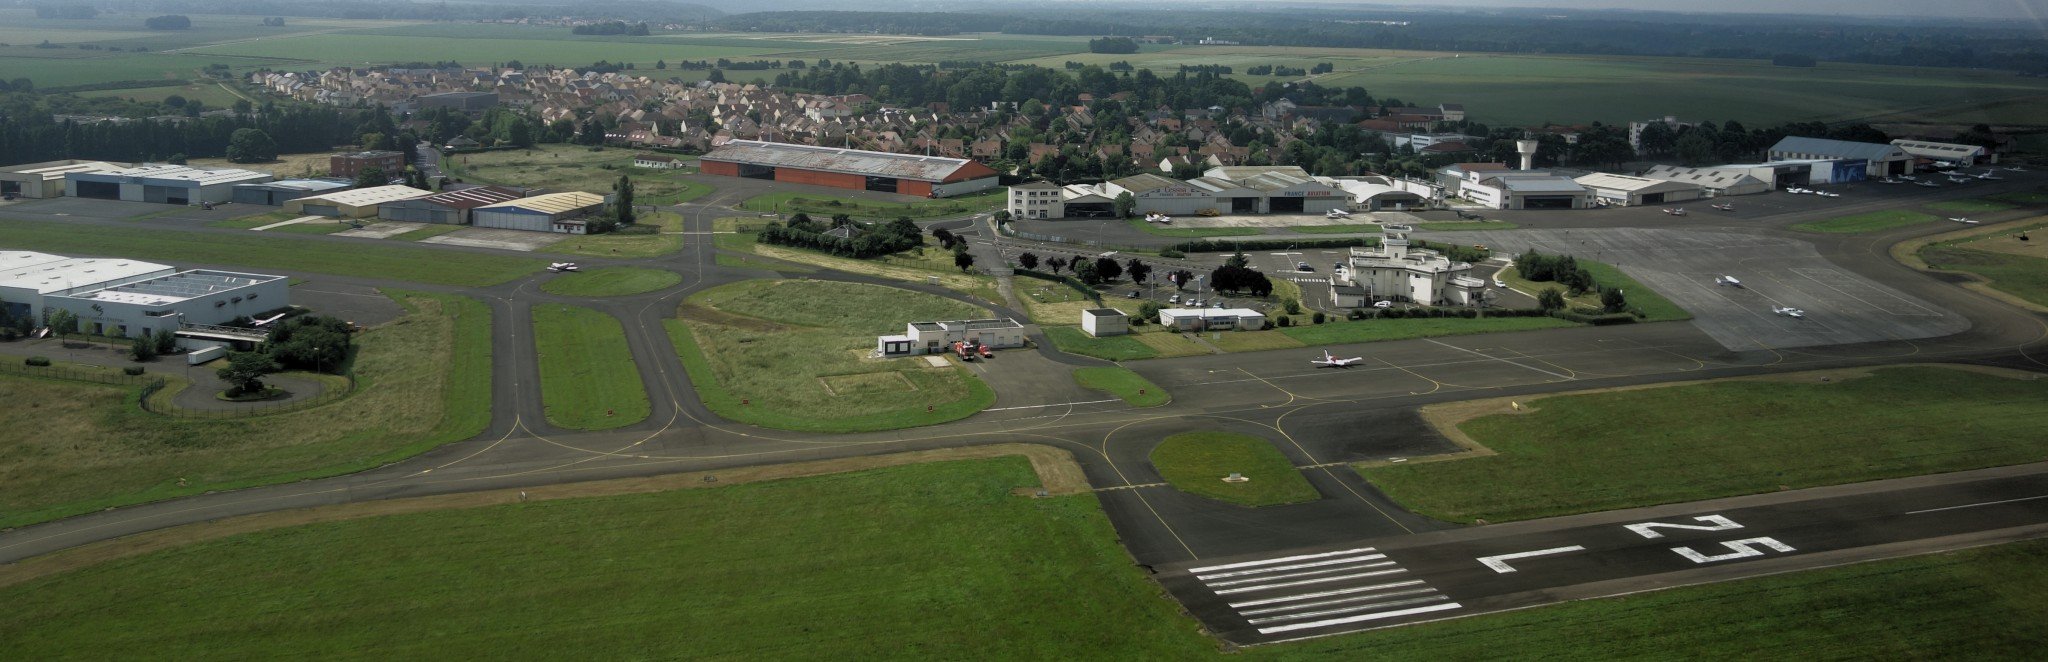 Une tour de contrôle et des hangars au bord de pistes, dont une de décollage marquée "25 L".